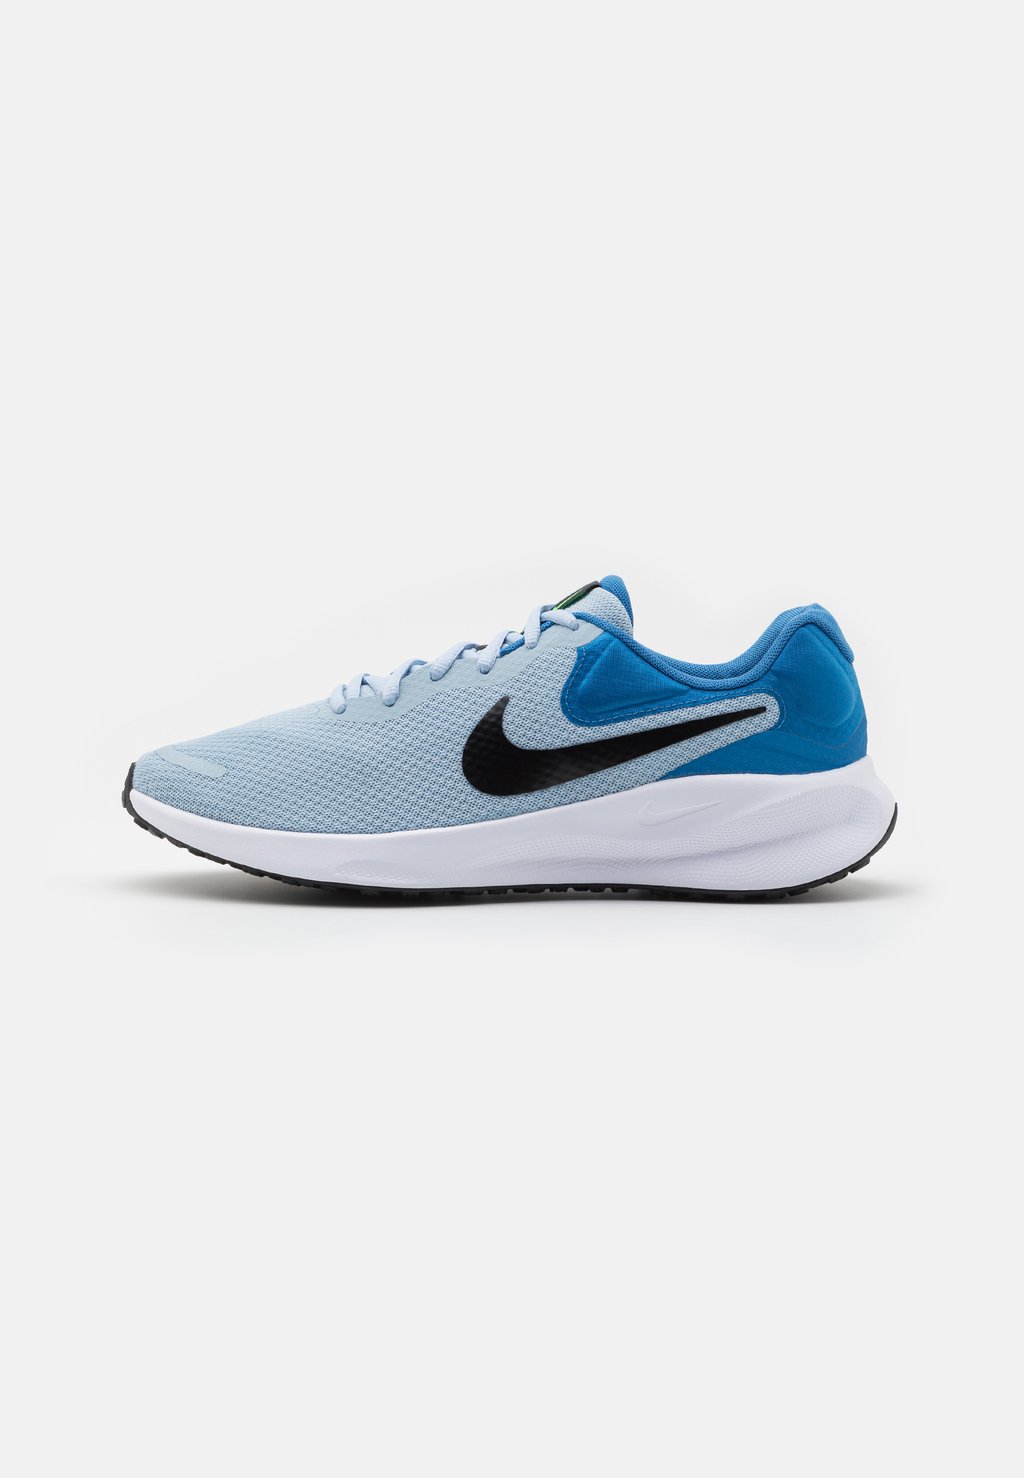 Нейтральные кроссовки Revolution 7 Nike, цвет light armory blue/black/star blue/green strike/white цена и фото